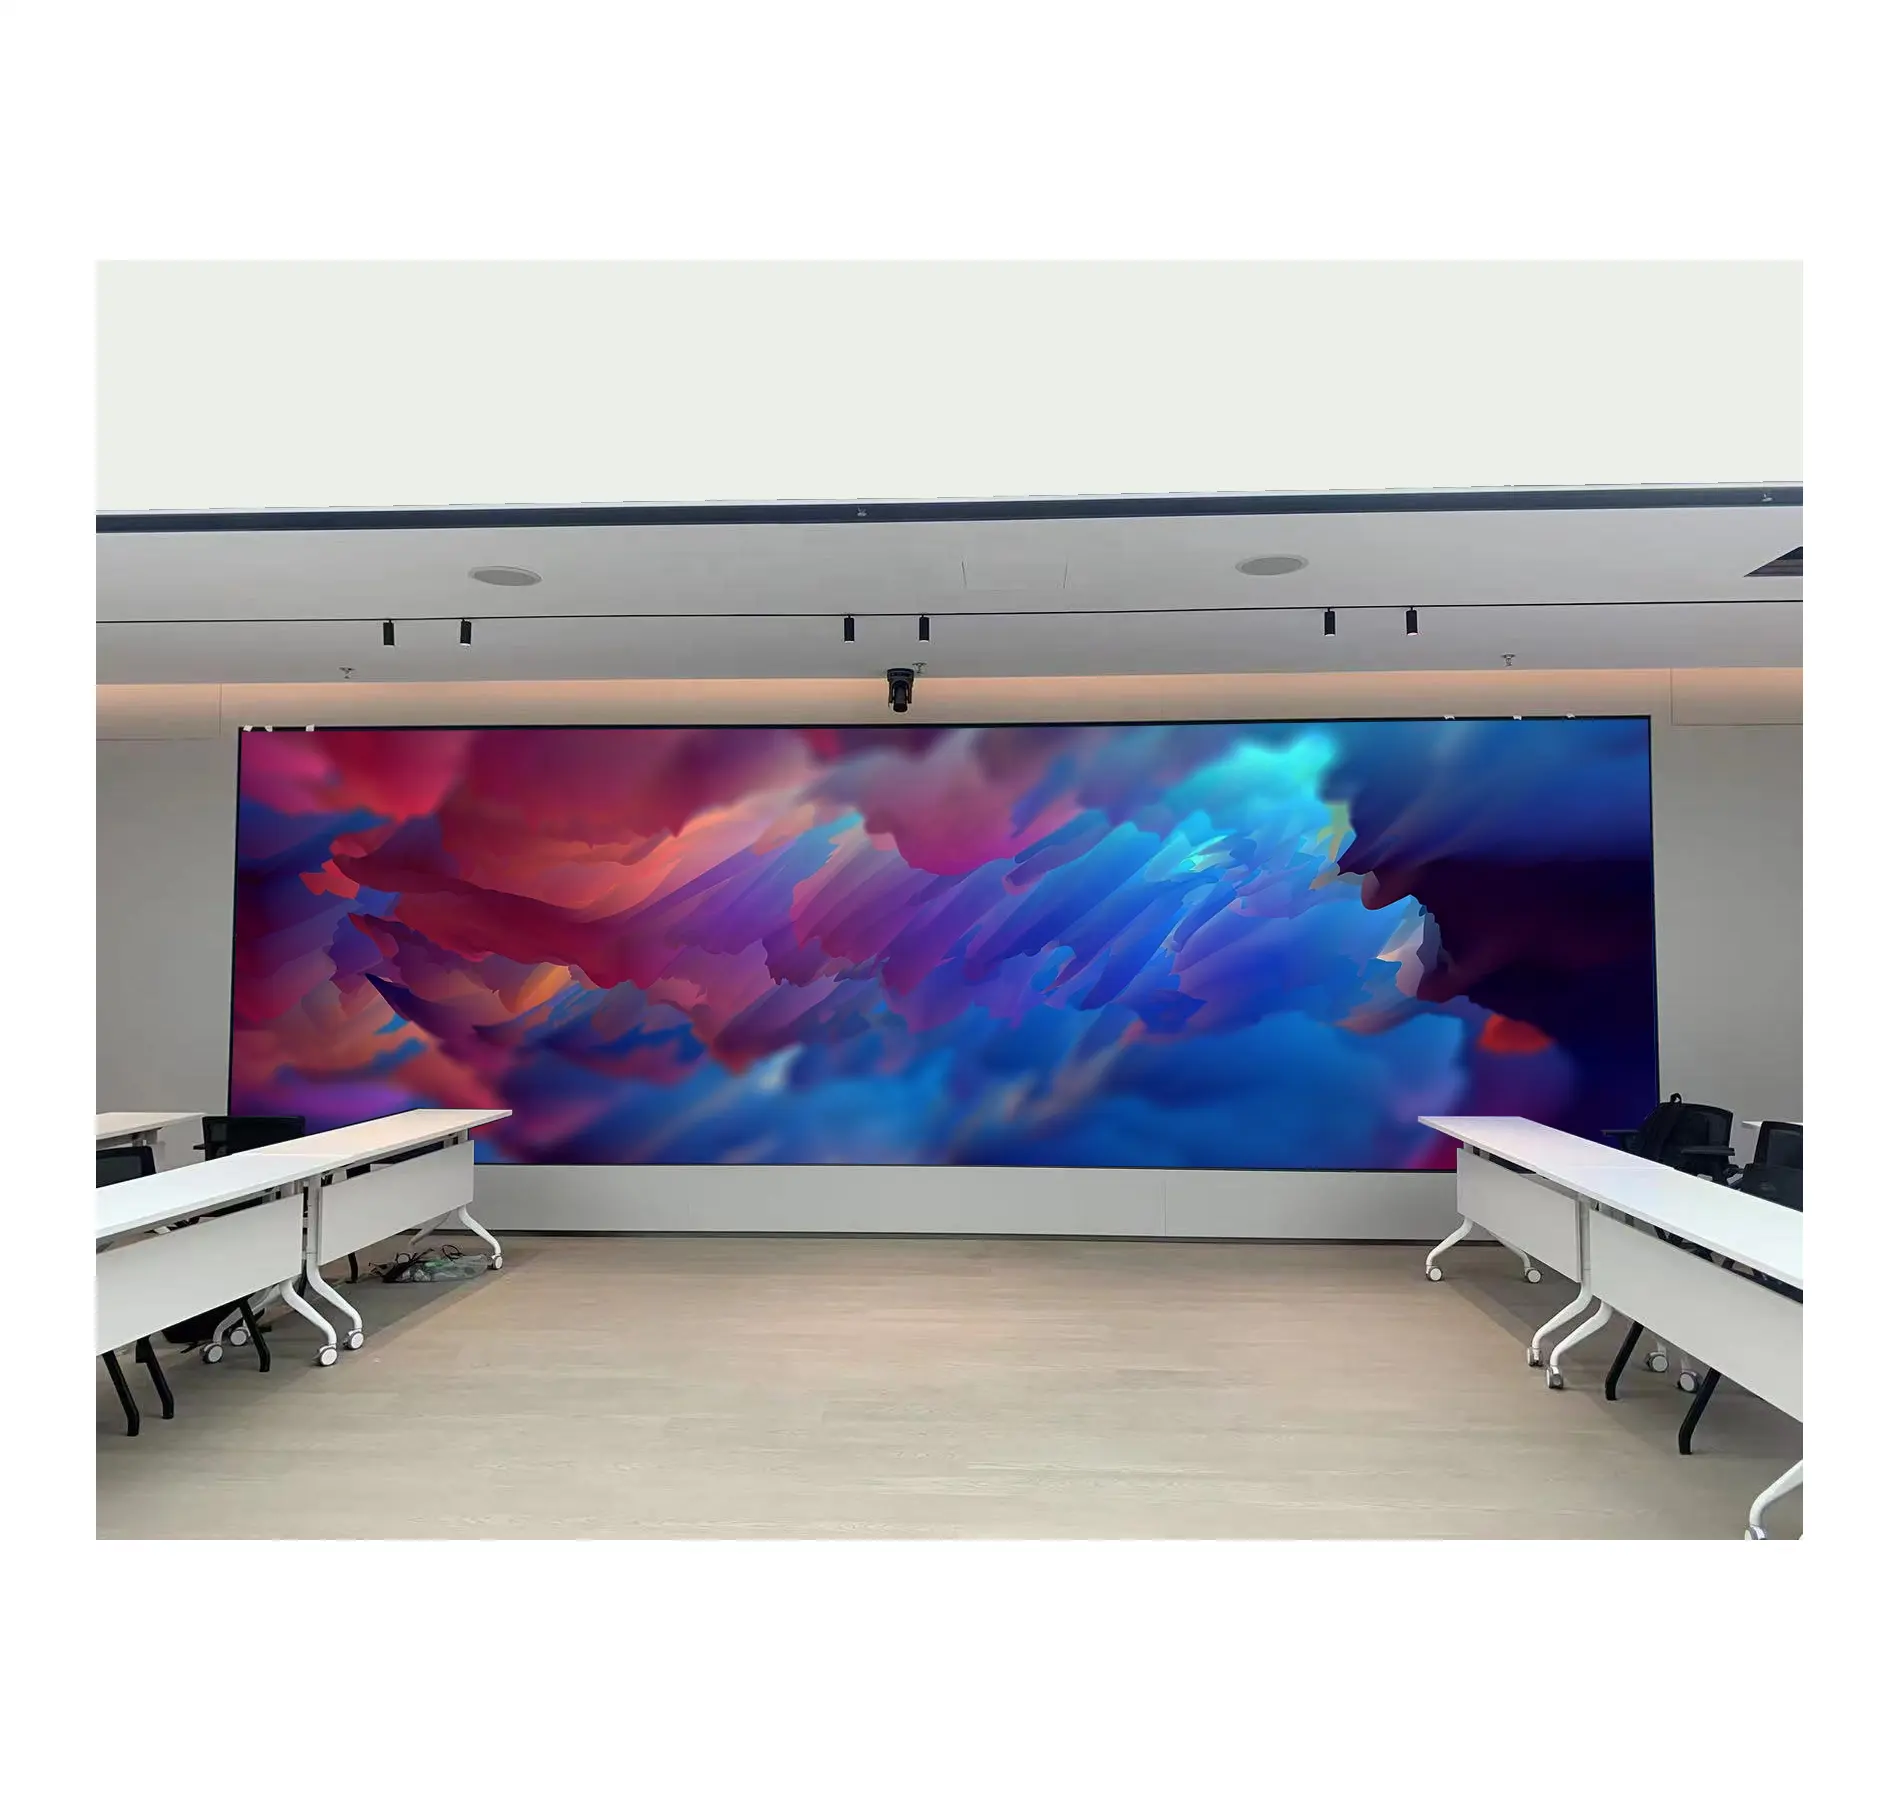 شاشة عرض led led madder hd فيديو جدارية ملونة بالكامل للسينما شاشة led رفيعة جدًا P1.5 P2 P3 P4 P5 لوحة شاشة عرض led